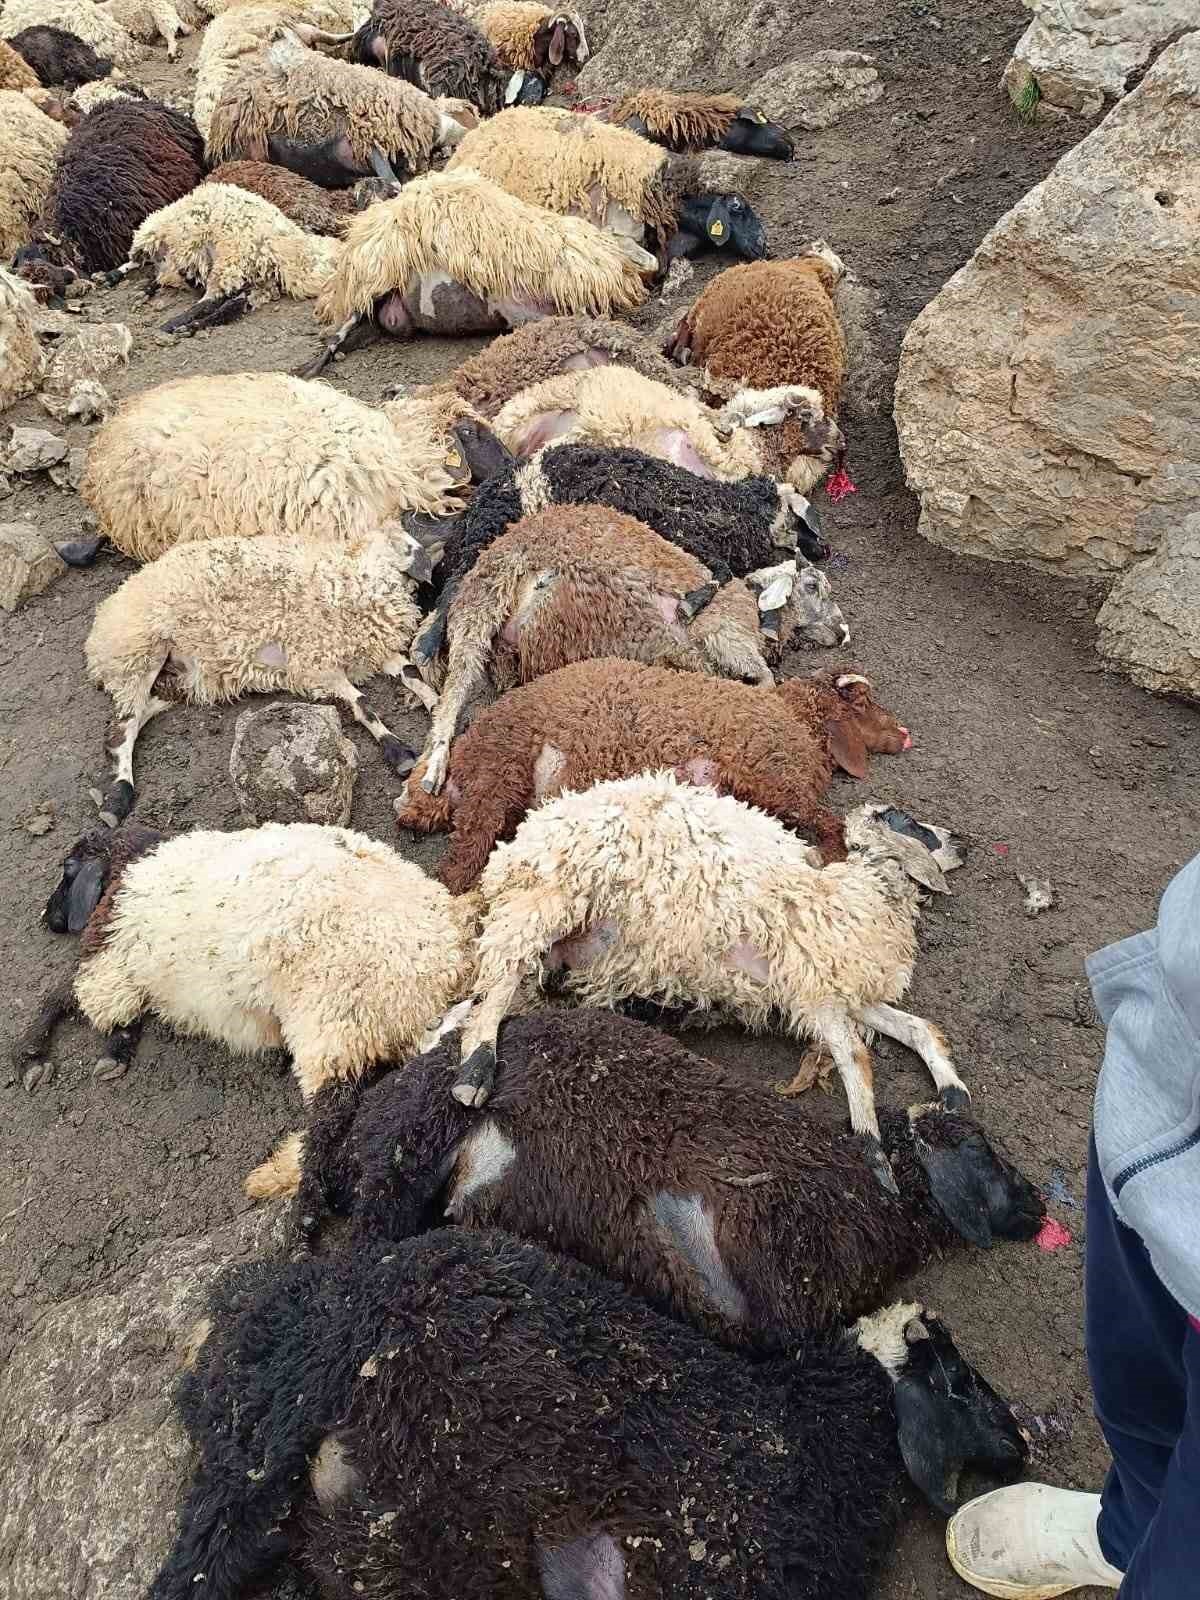 Kurtlar Sürüye Saldırdı, 74 Koyun Telef Oldu